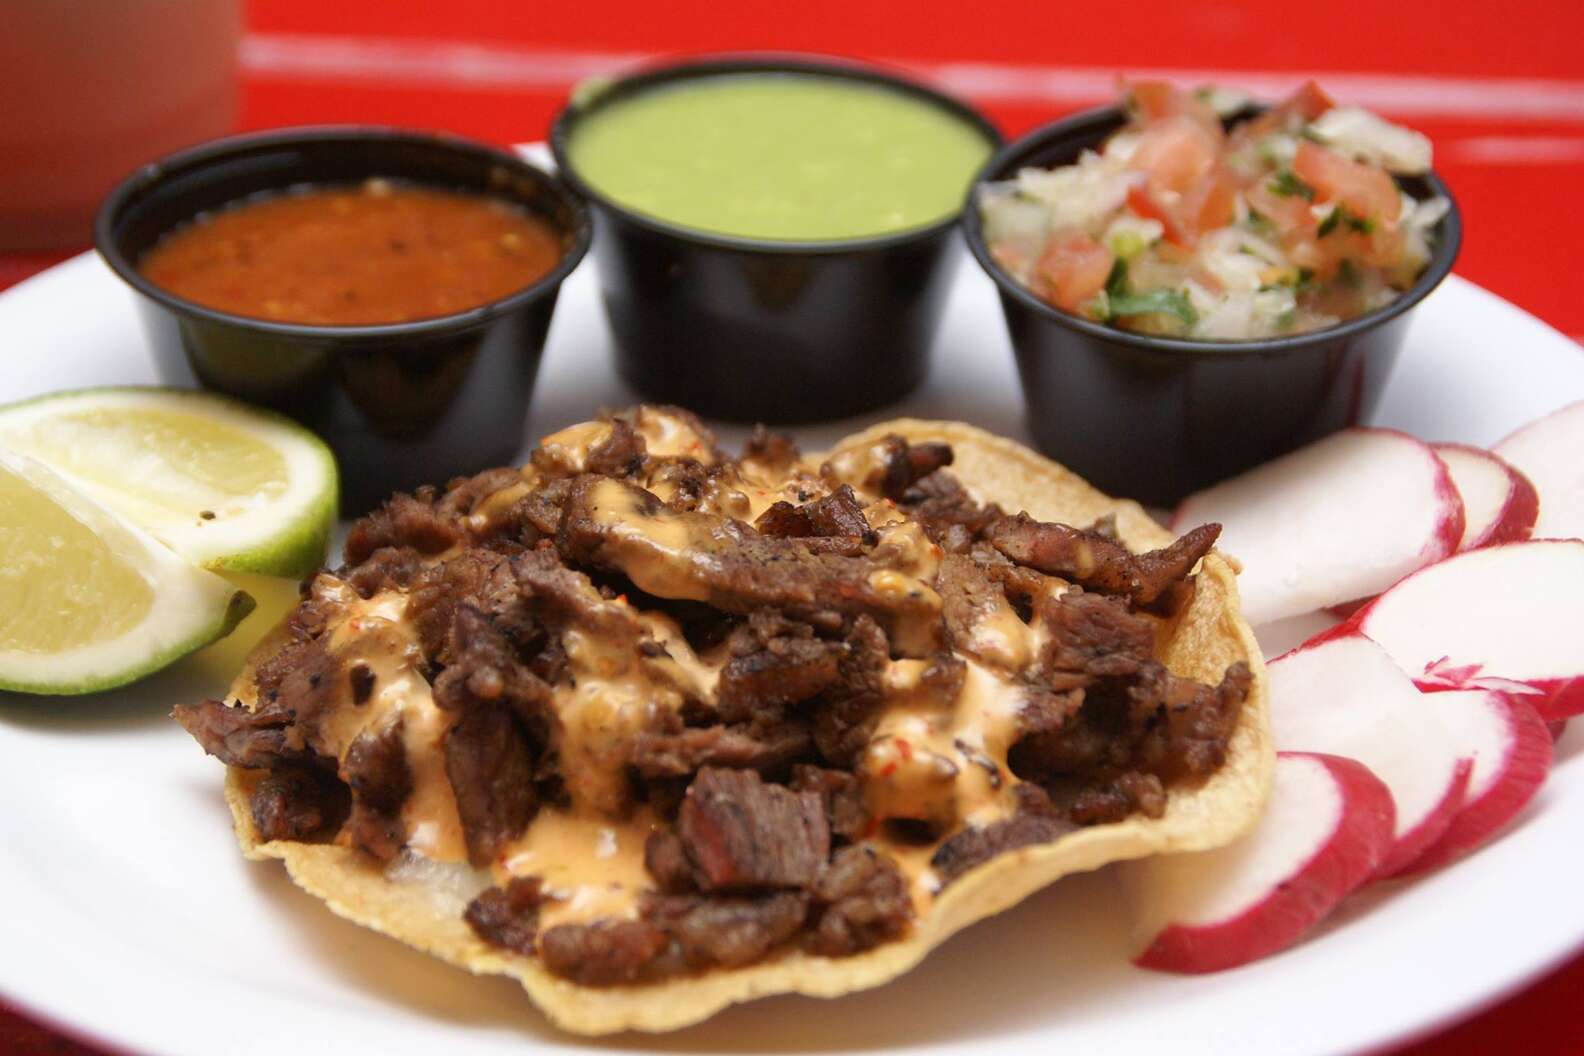 Mexicali Taco & Co